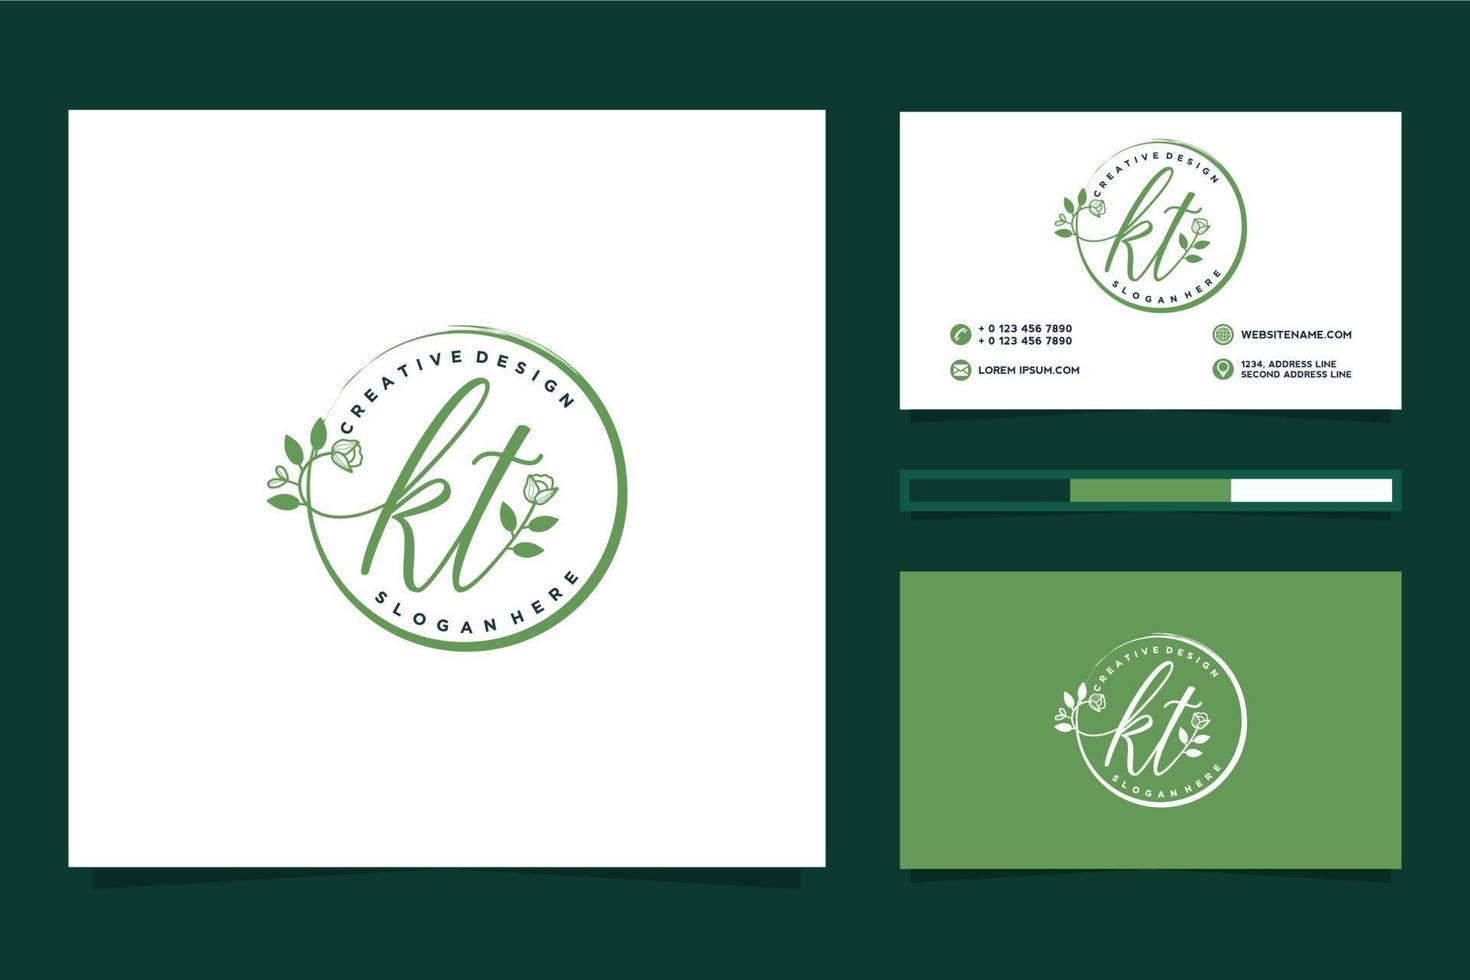 initiale kt féminin logo collections et affaires carte modèle prime vecteur